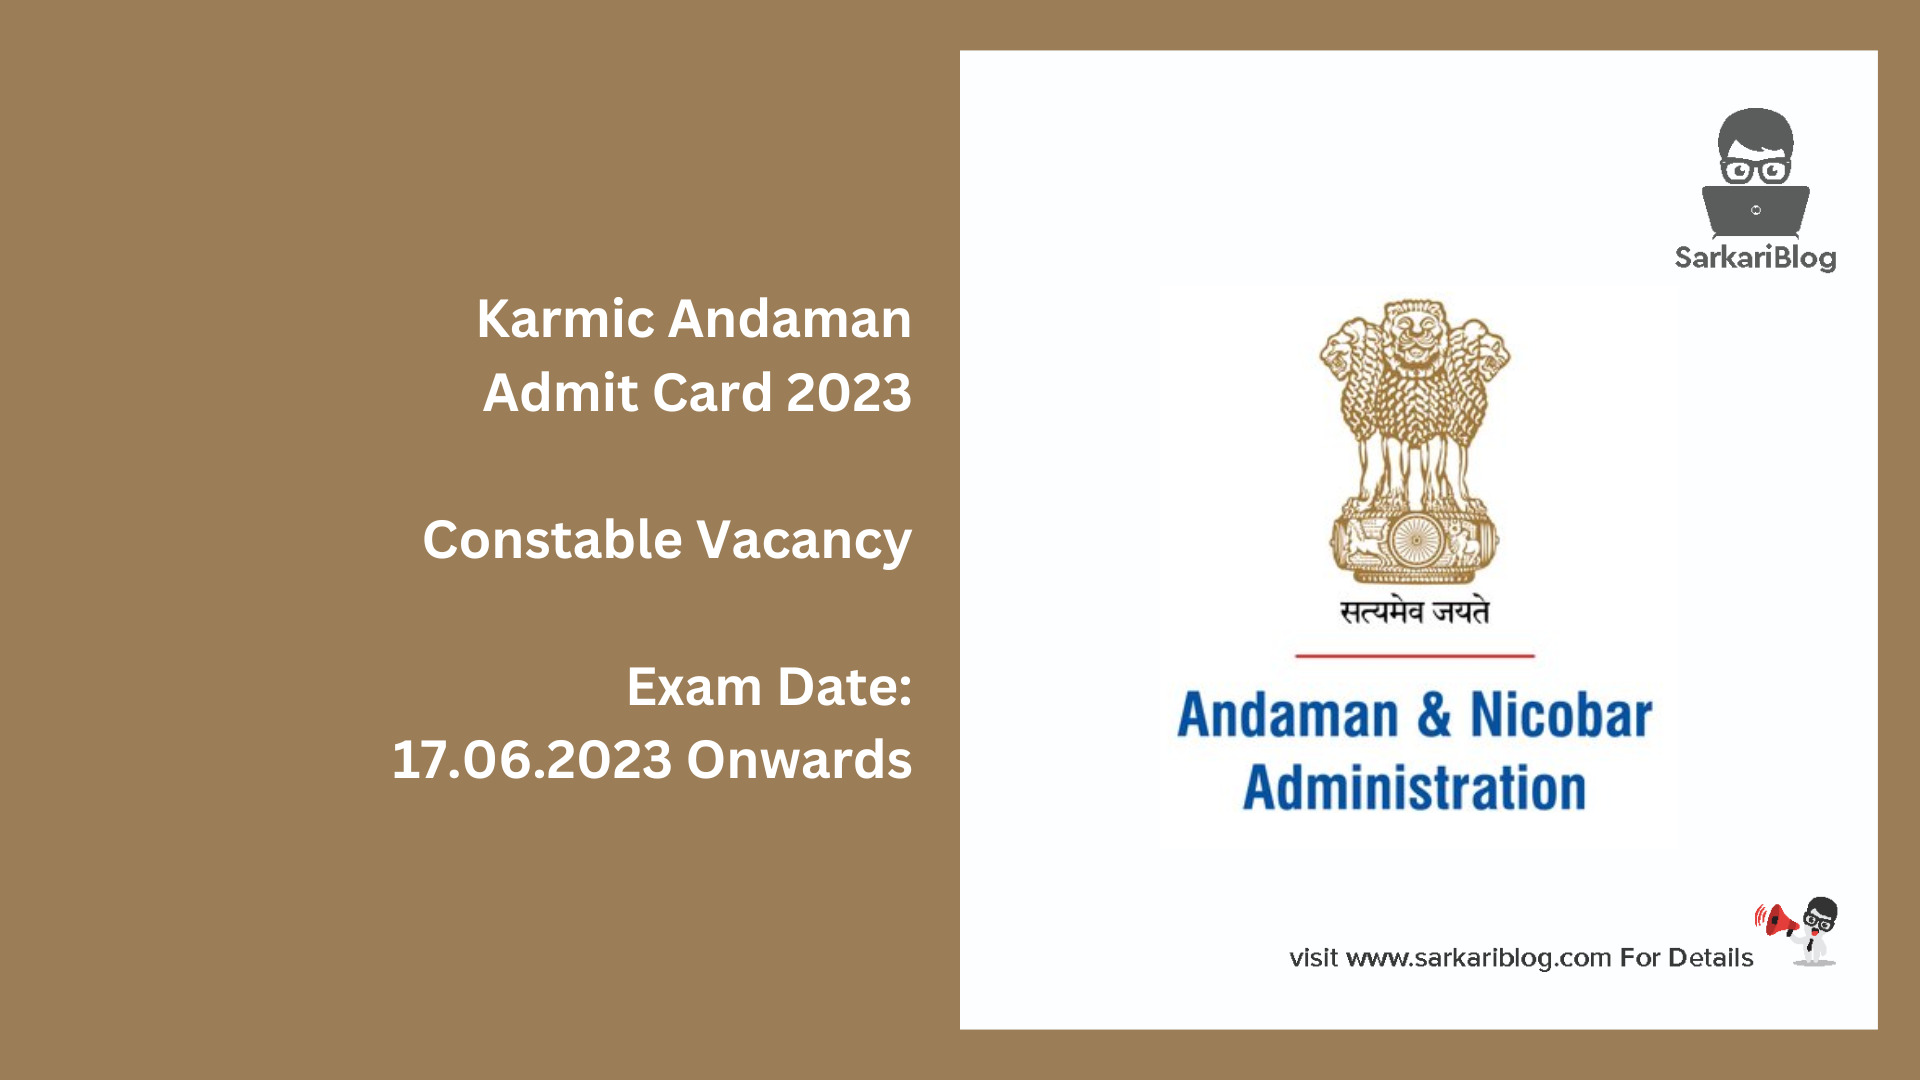 Karmic Andaman Admit Card 2023